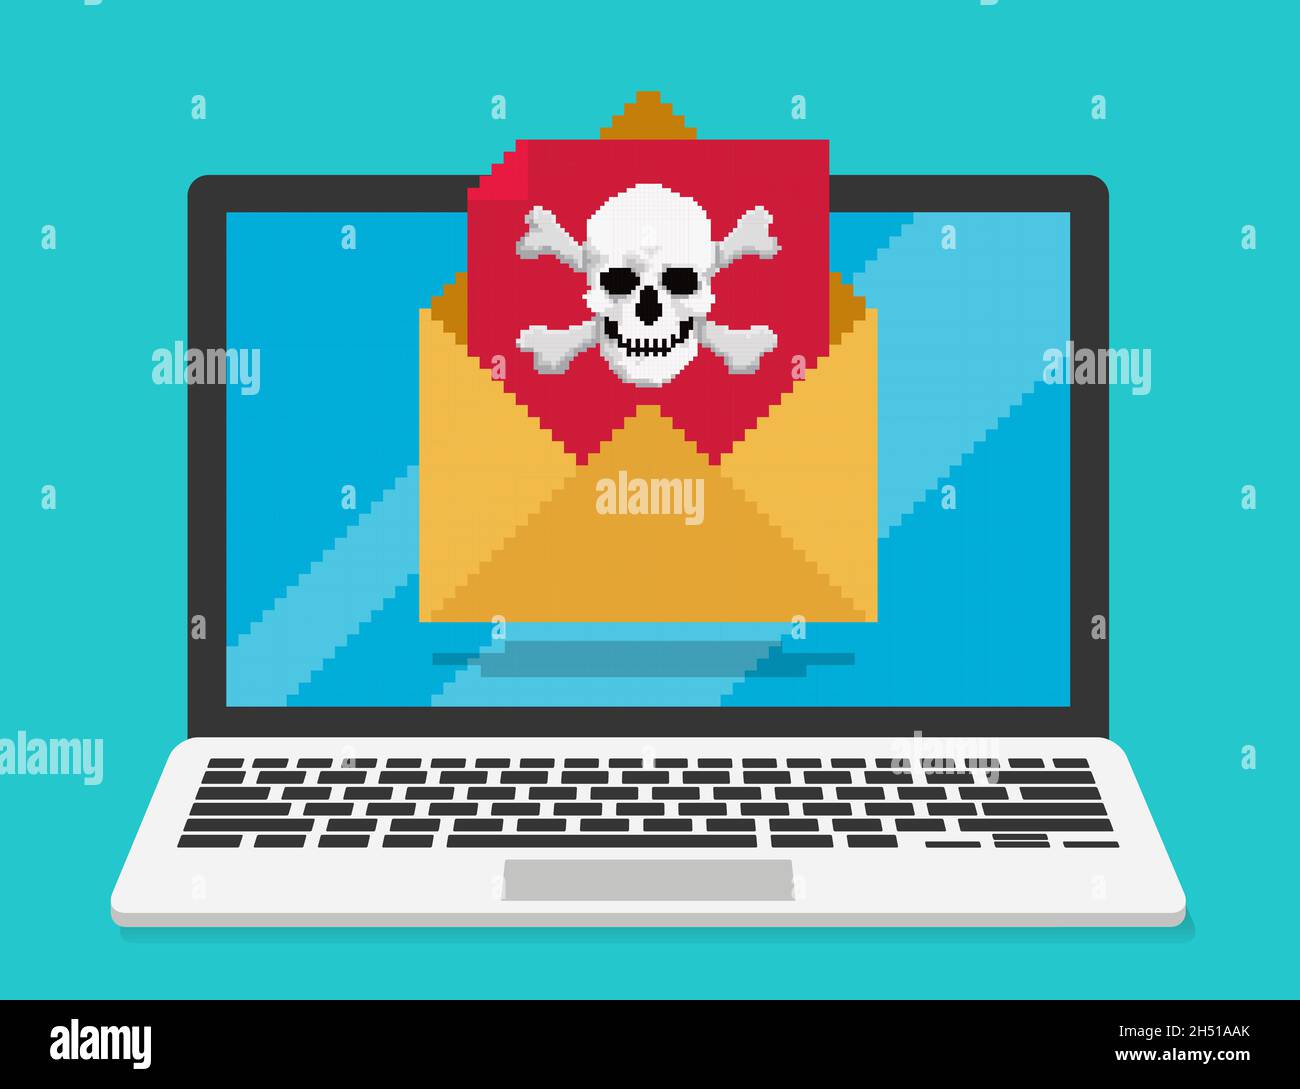 Pixelkunst, Vektordarstellung von E-Mails mit Computerviren. Der Schädel erscheint auf einem roten Buchstaben, der aus dem Umschlag ragt Stock Vektor